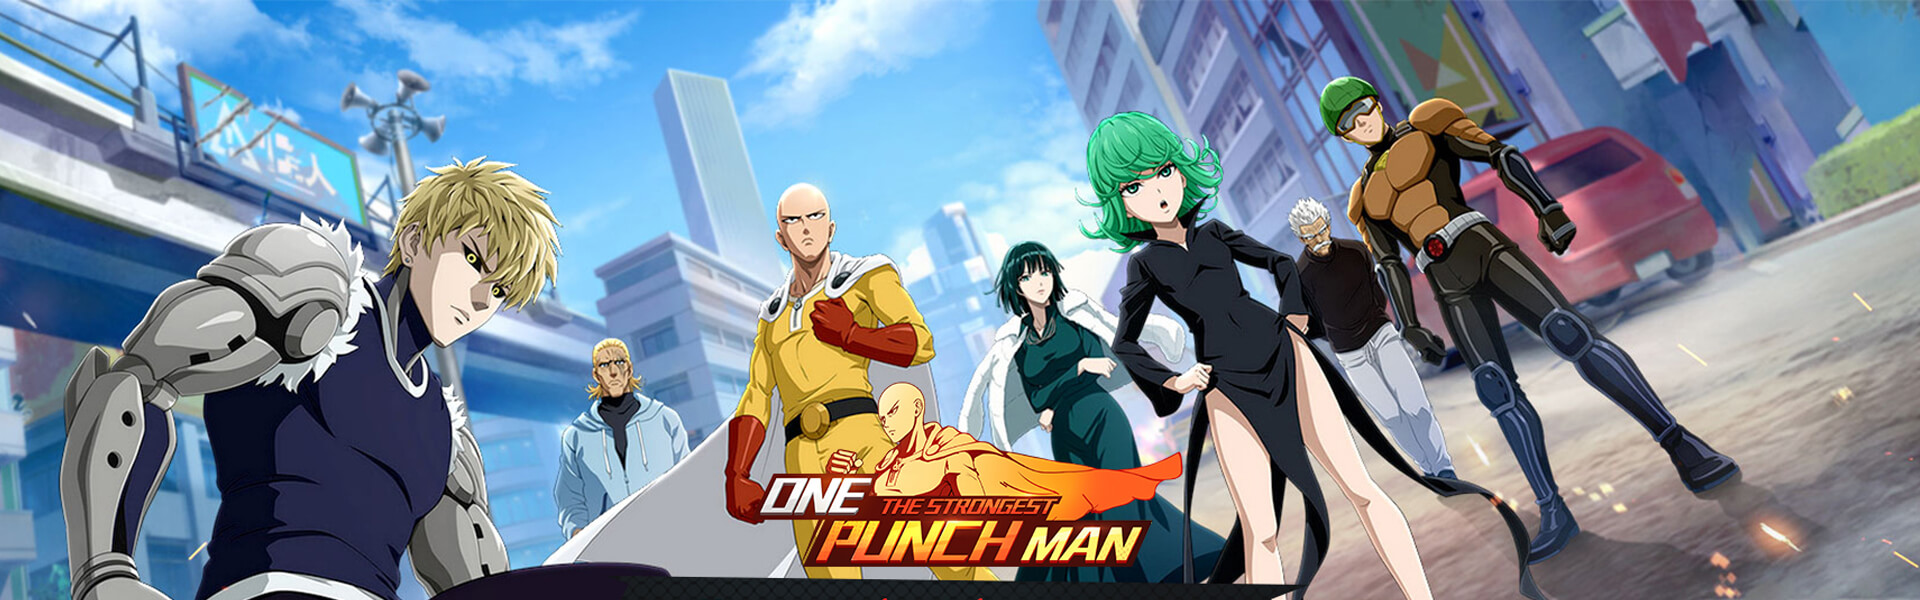 One Punch Man: The Strongest - Game đấu thẻ tướng chuẩn anime, giải trí cùng Saitama